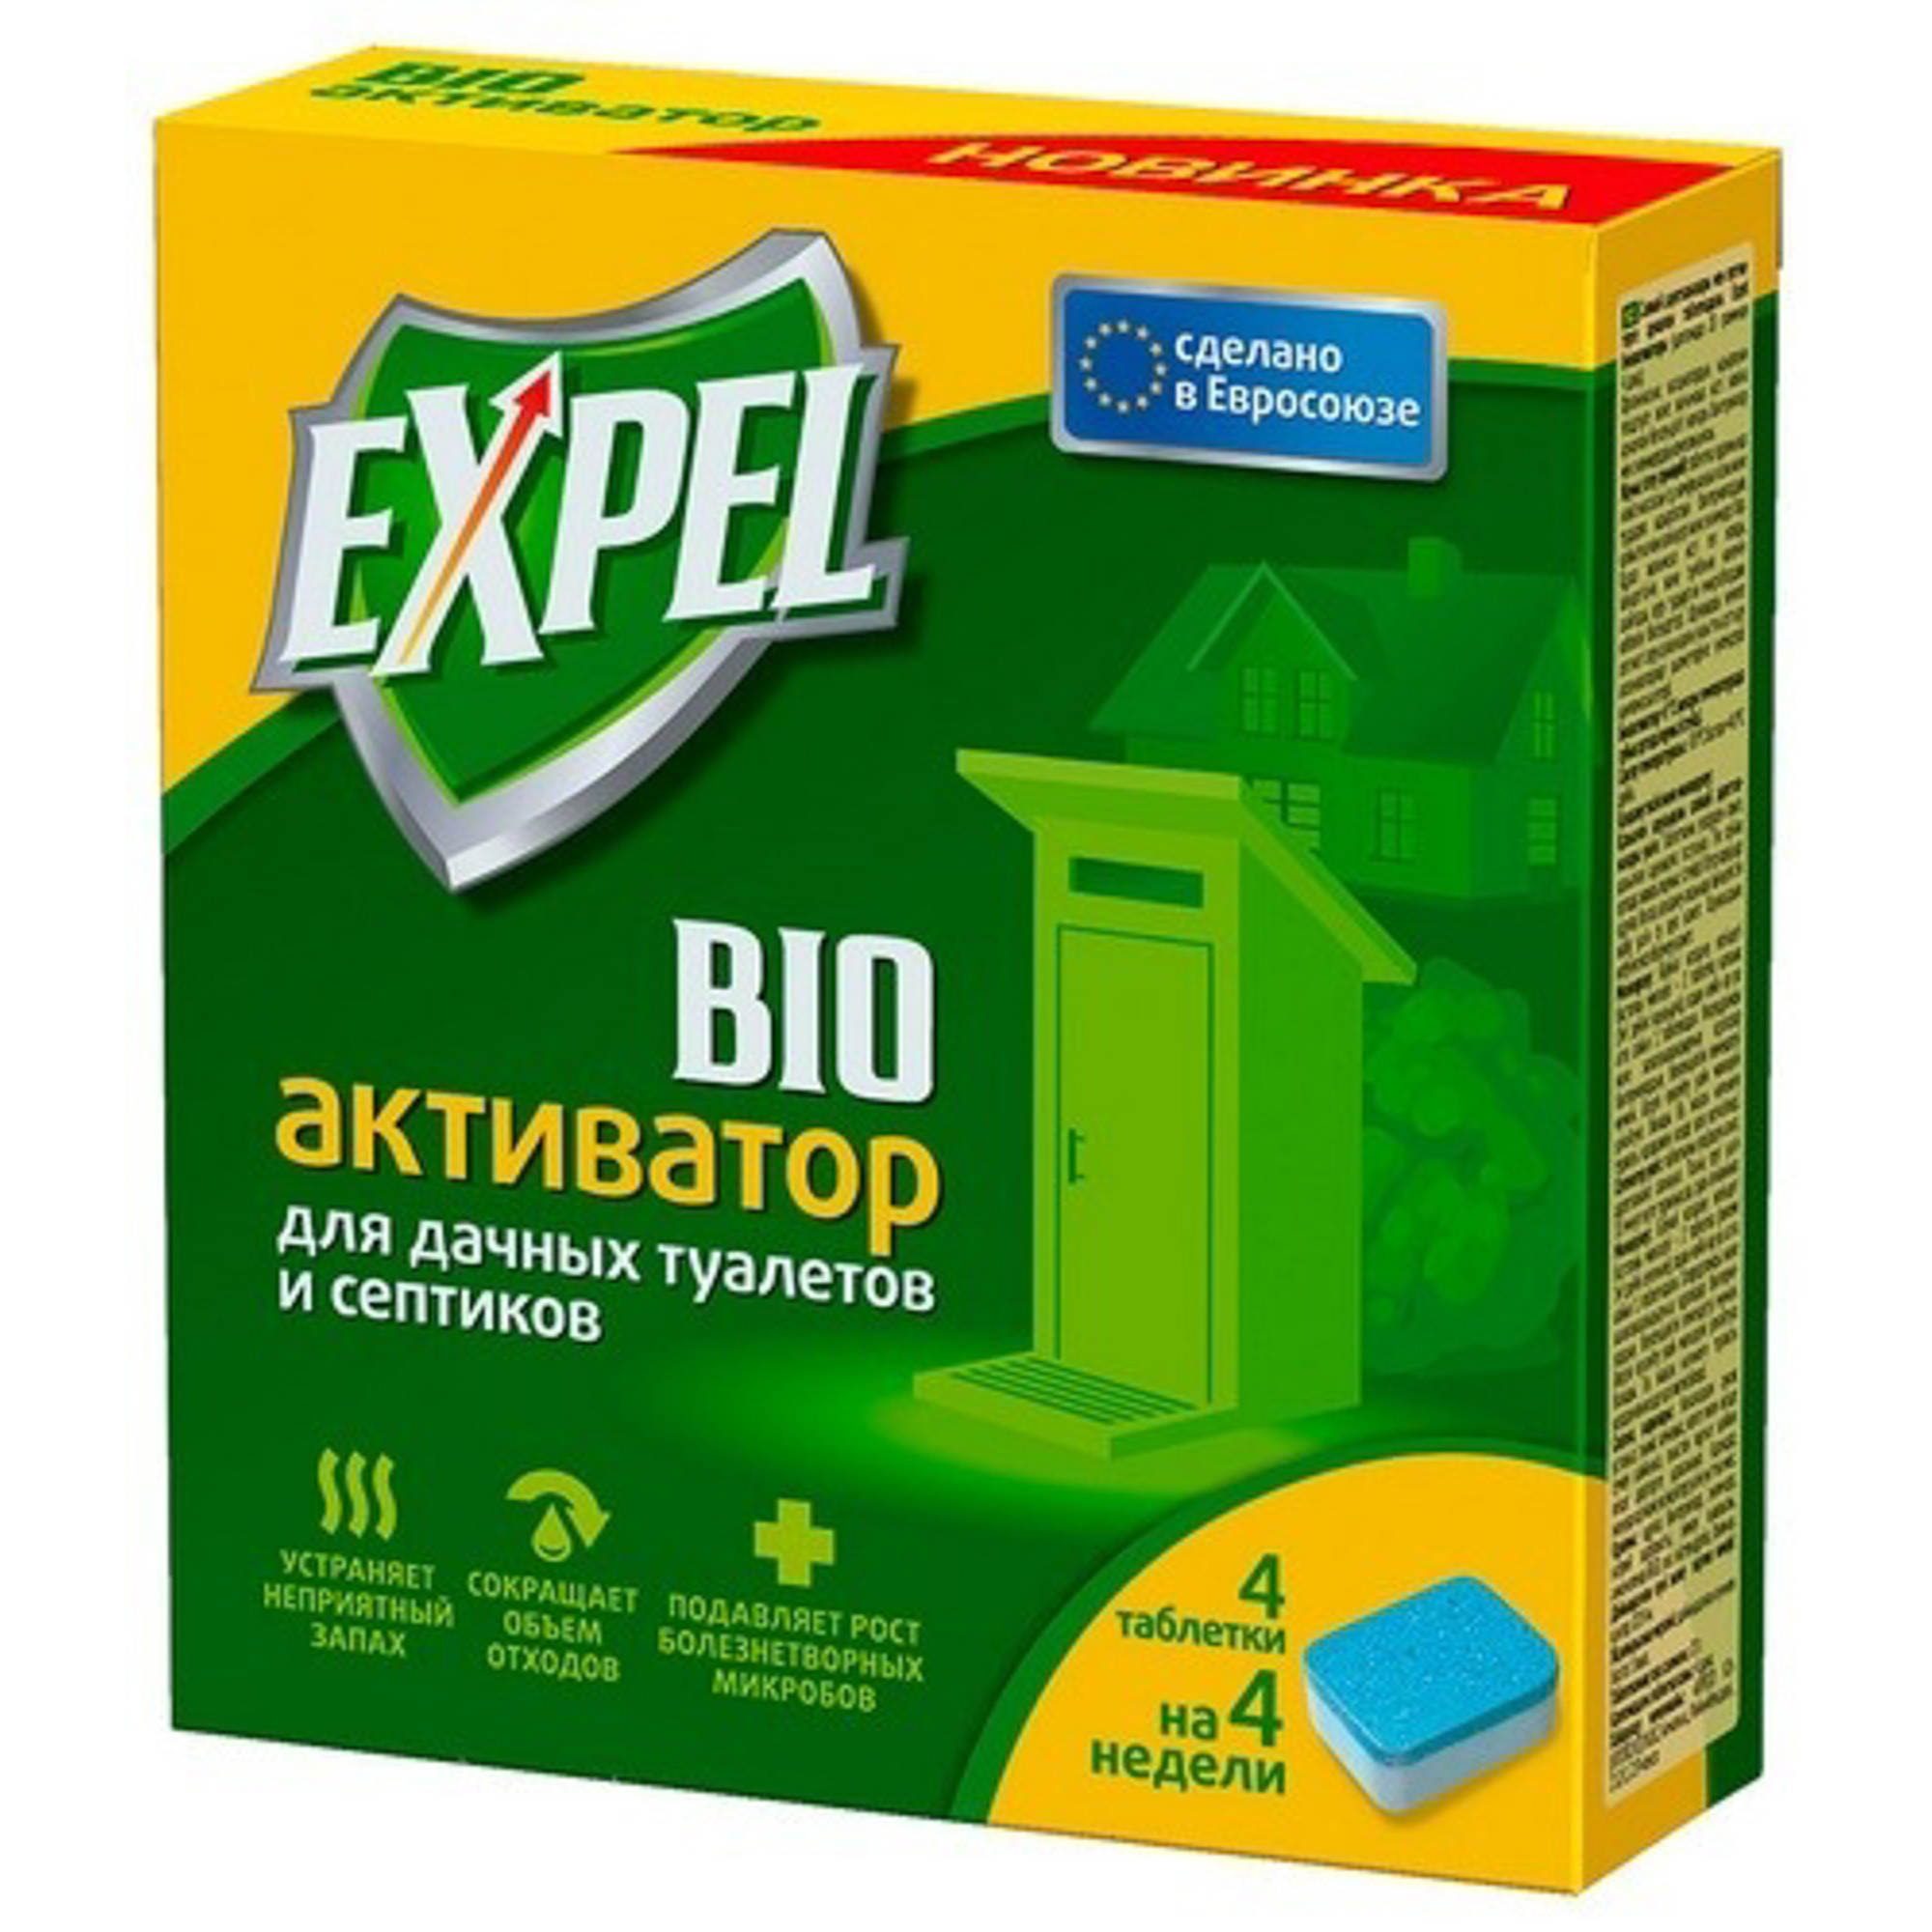 фото Биоактиватор expel для дачных туалетов и септиков, таблетки в картонной упаковке, 4шт.